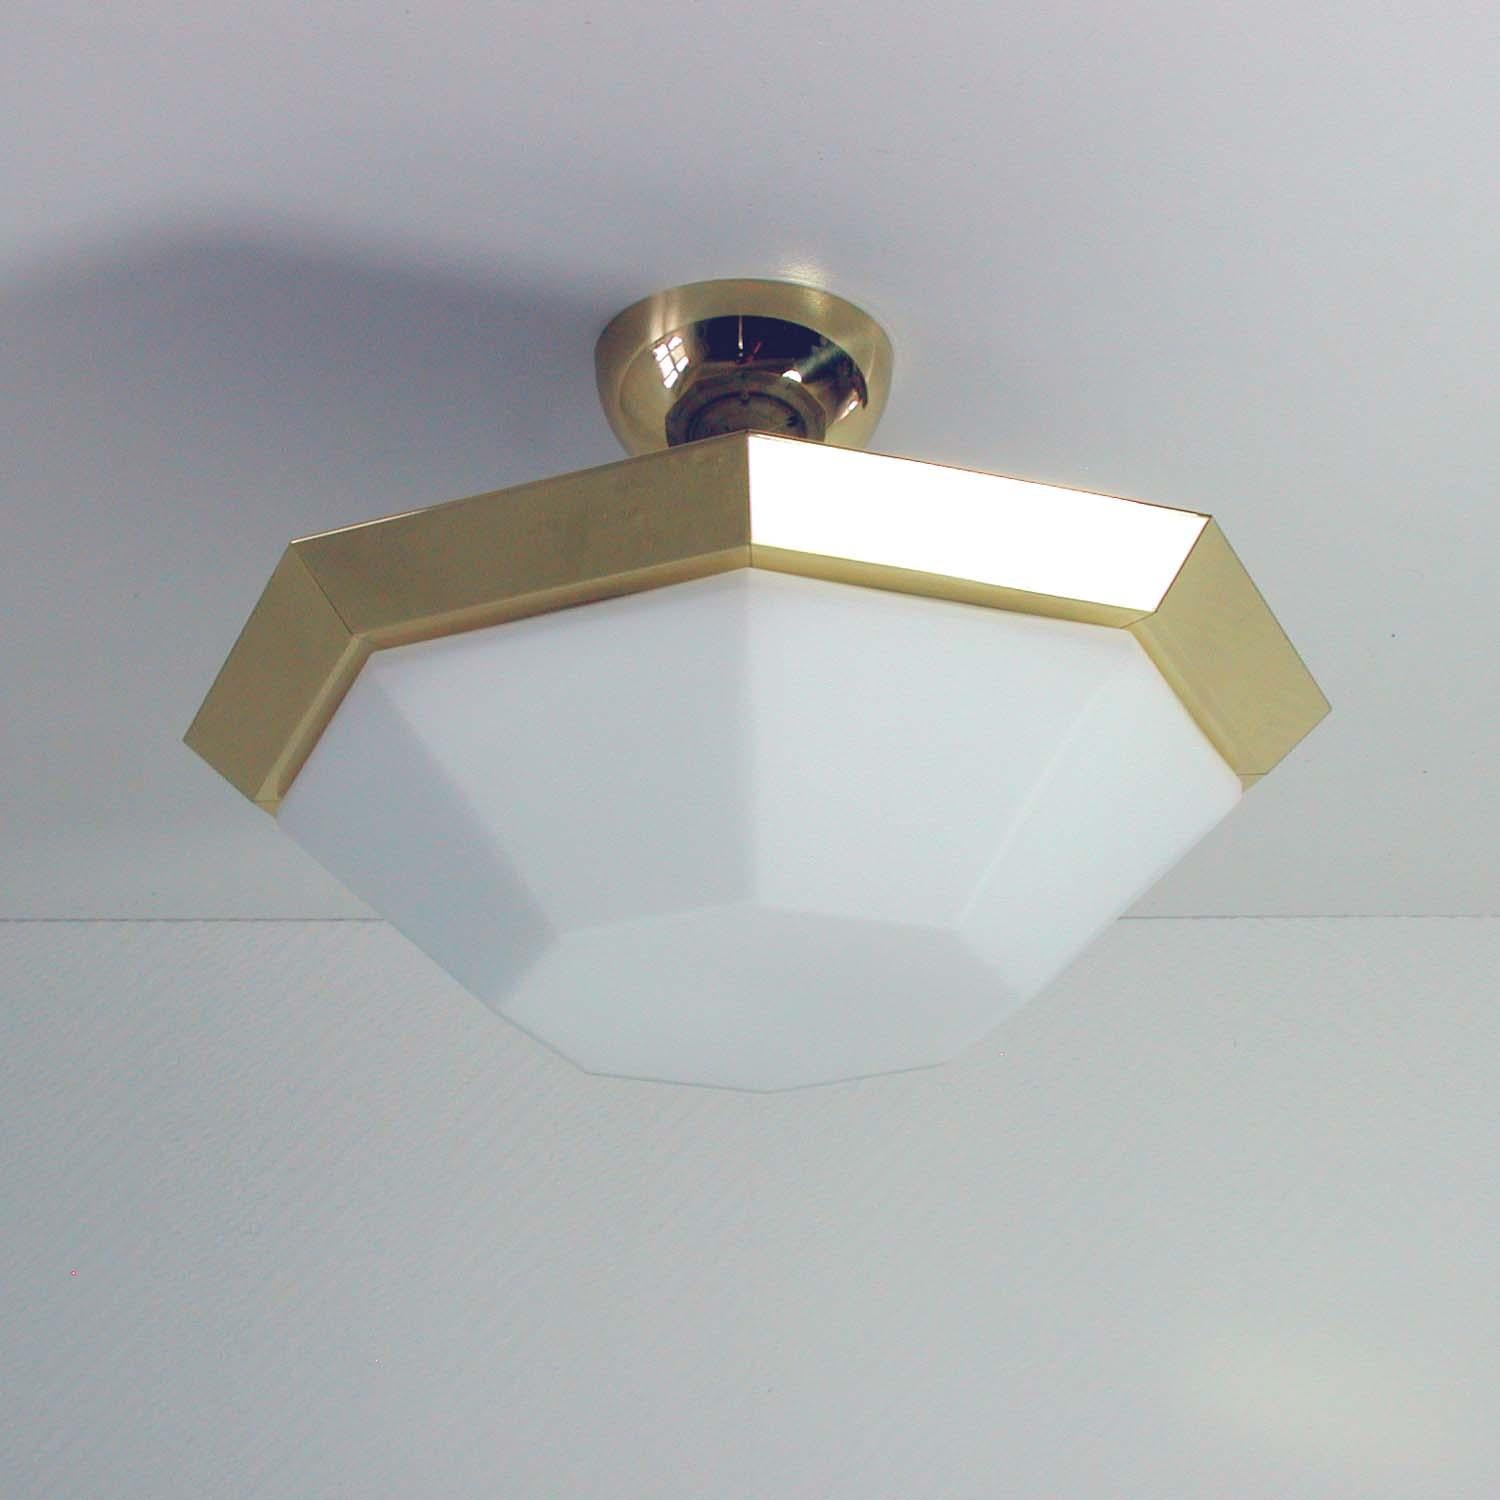 octagon ceiling light fixture